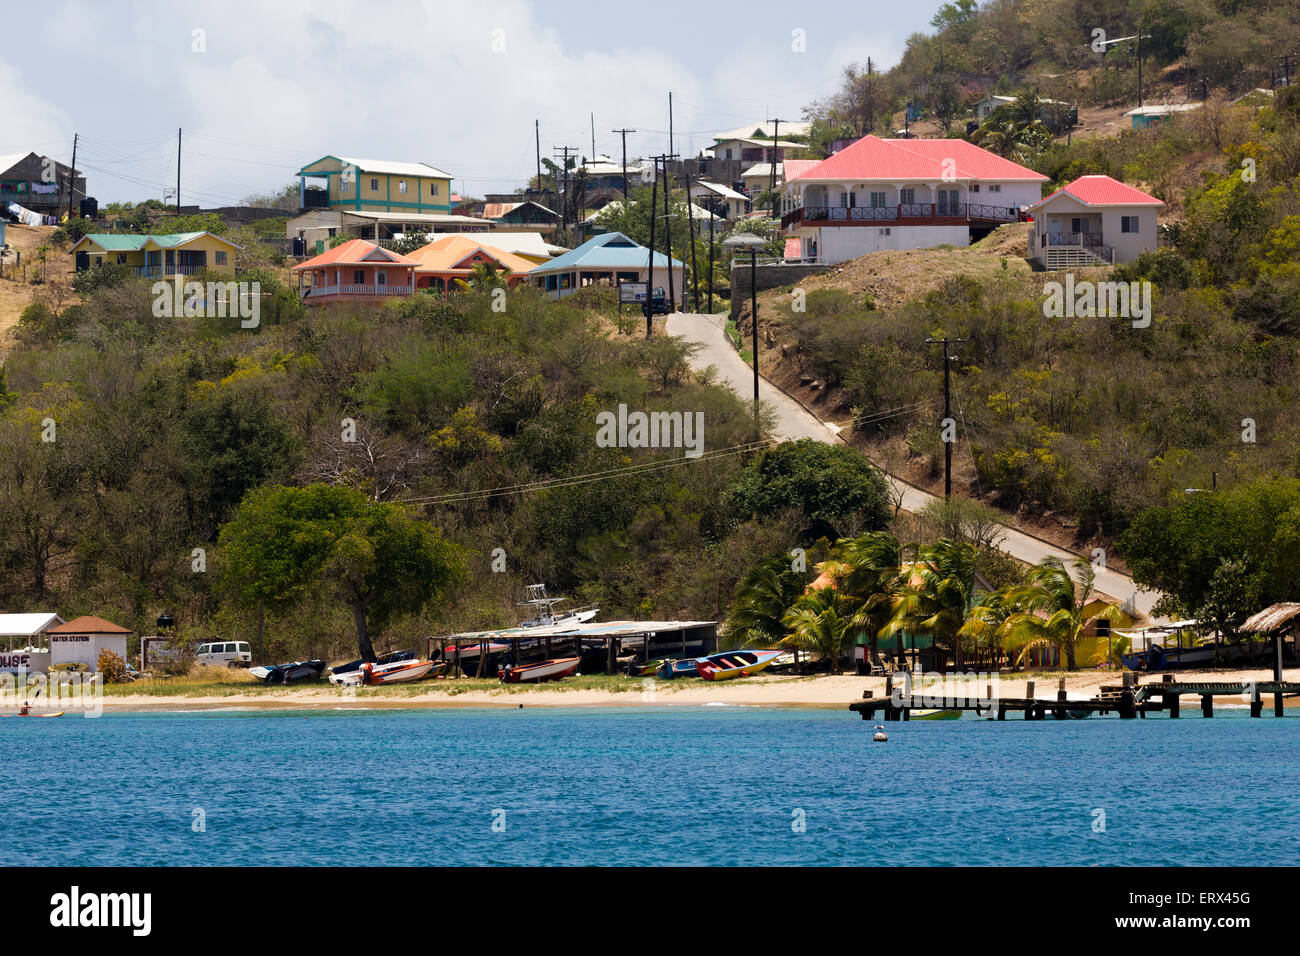 Vista de la playa, lanchas, Muelle y casas; Bahía Salina, Mayreau, San Vicente y las Granadinas. Foto de stock